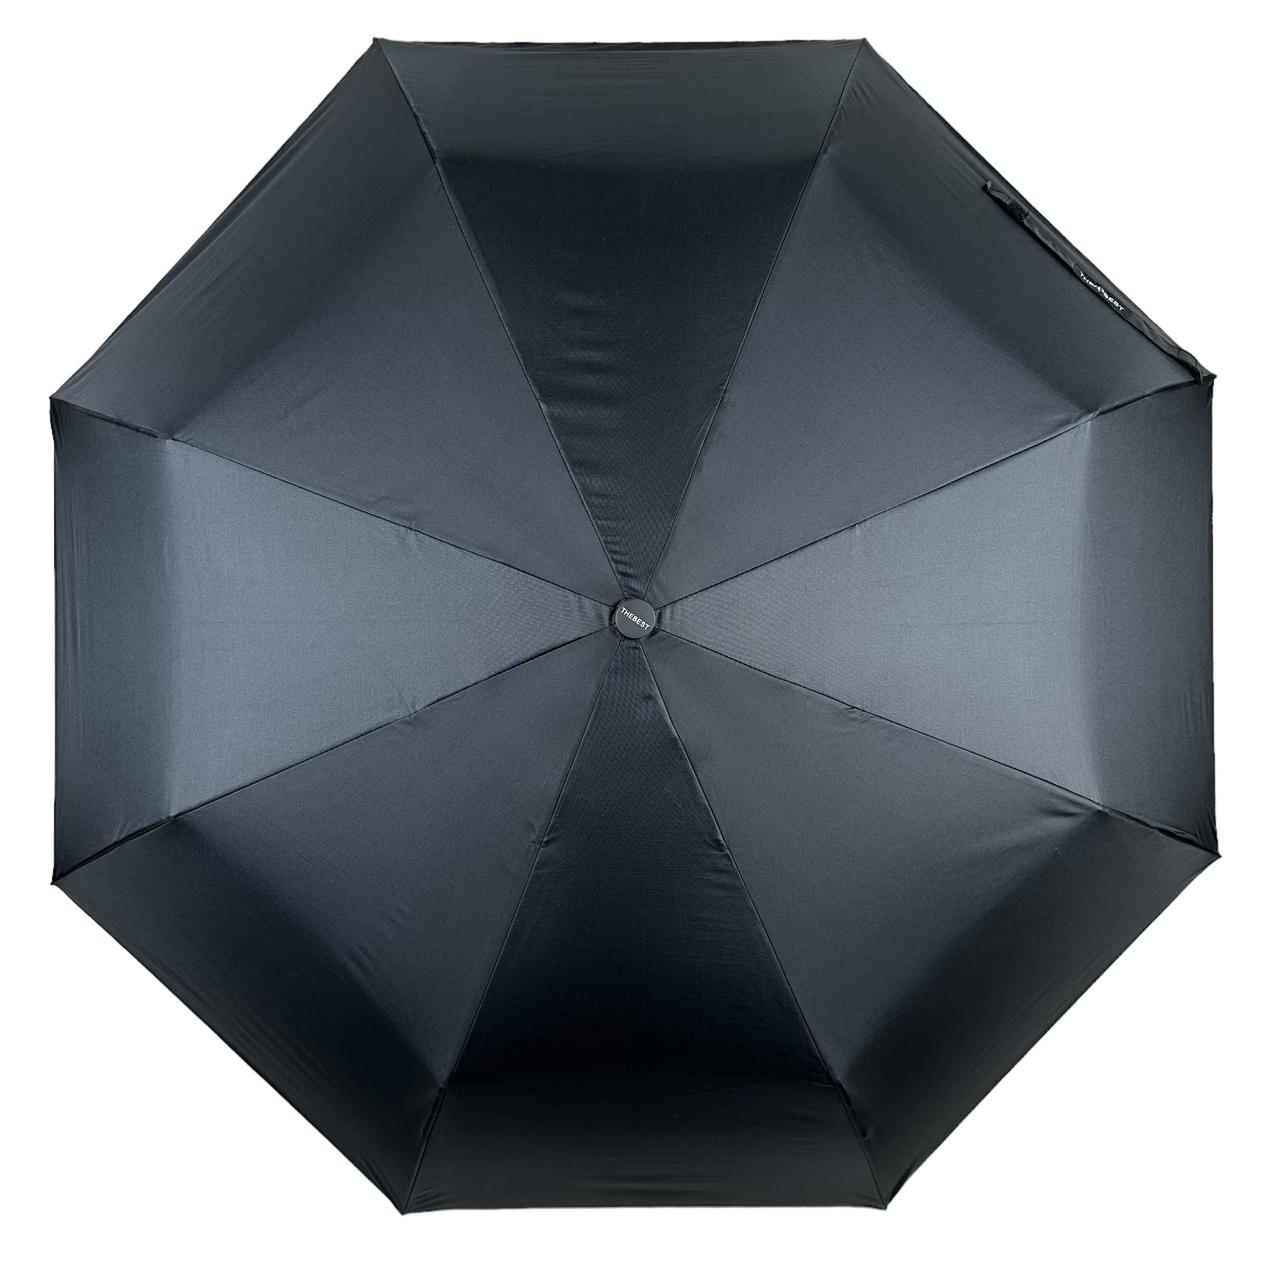 Мужской складной зонтик полуавтомат The Best 99 см черный - фото 5